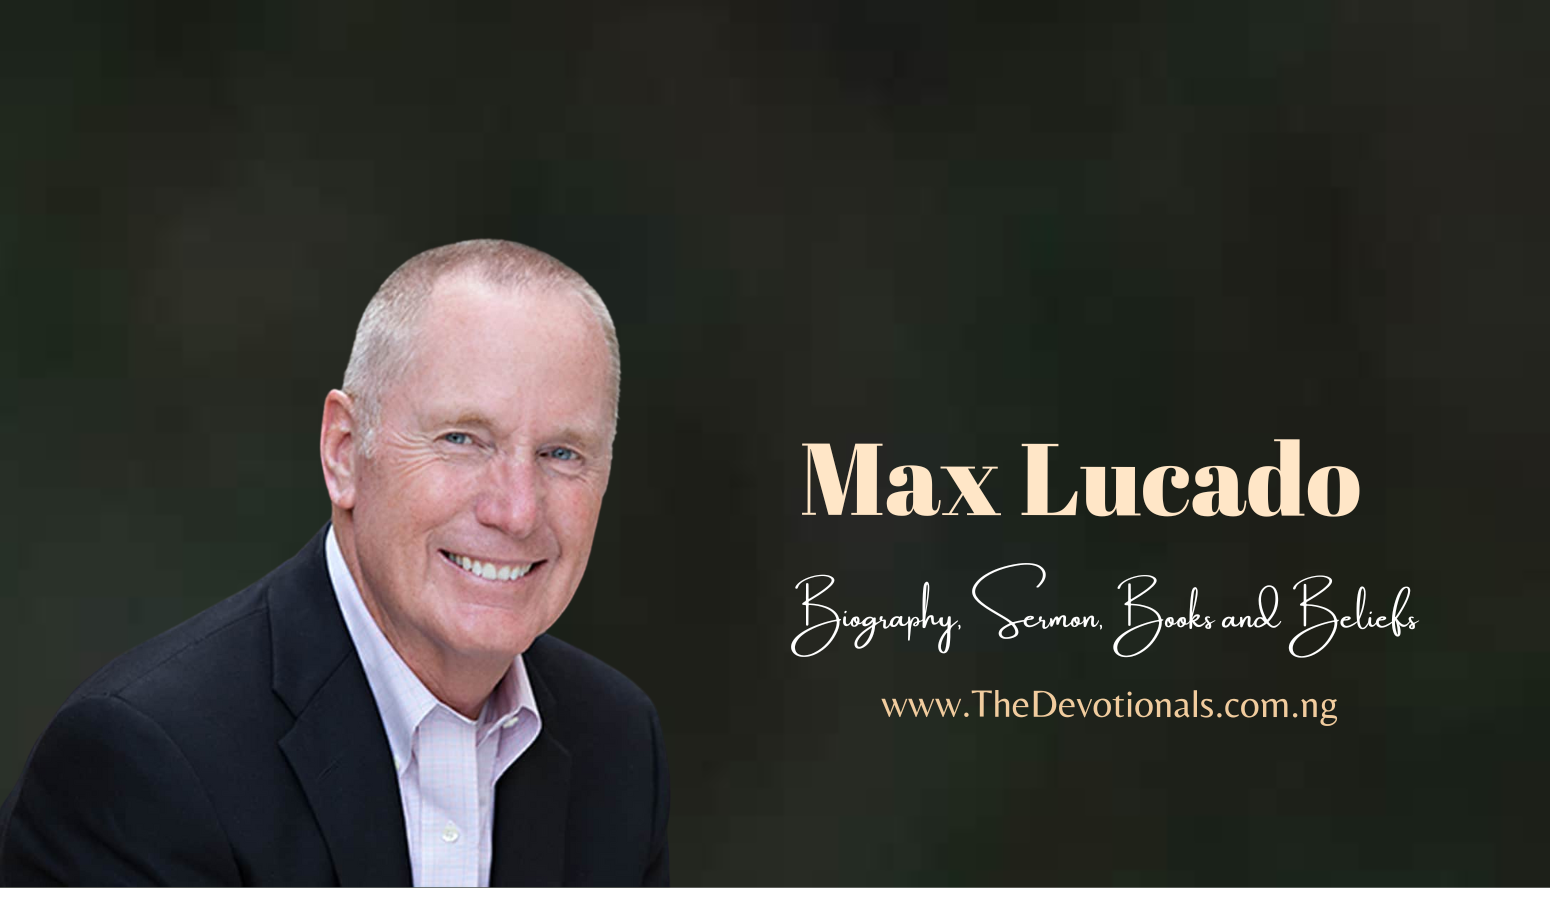 MAX LUCADO PROFILE, SERMON, BELIEFS, LIVE SERVICES, BOOKS, NET WORTH